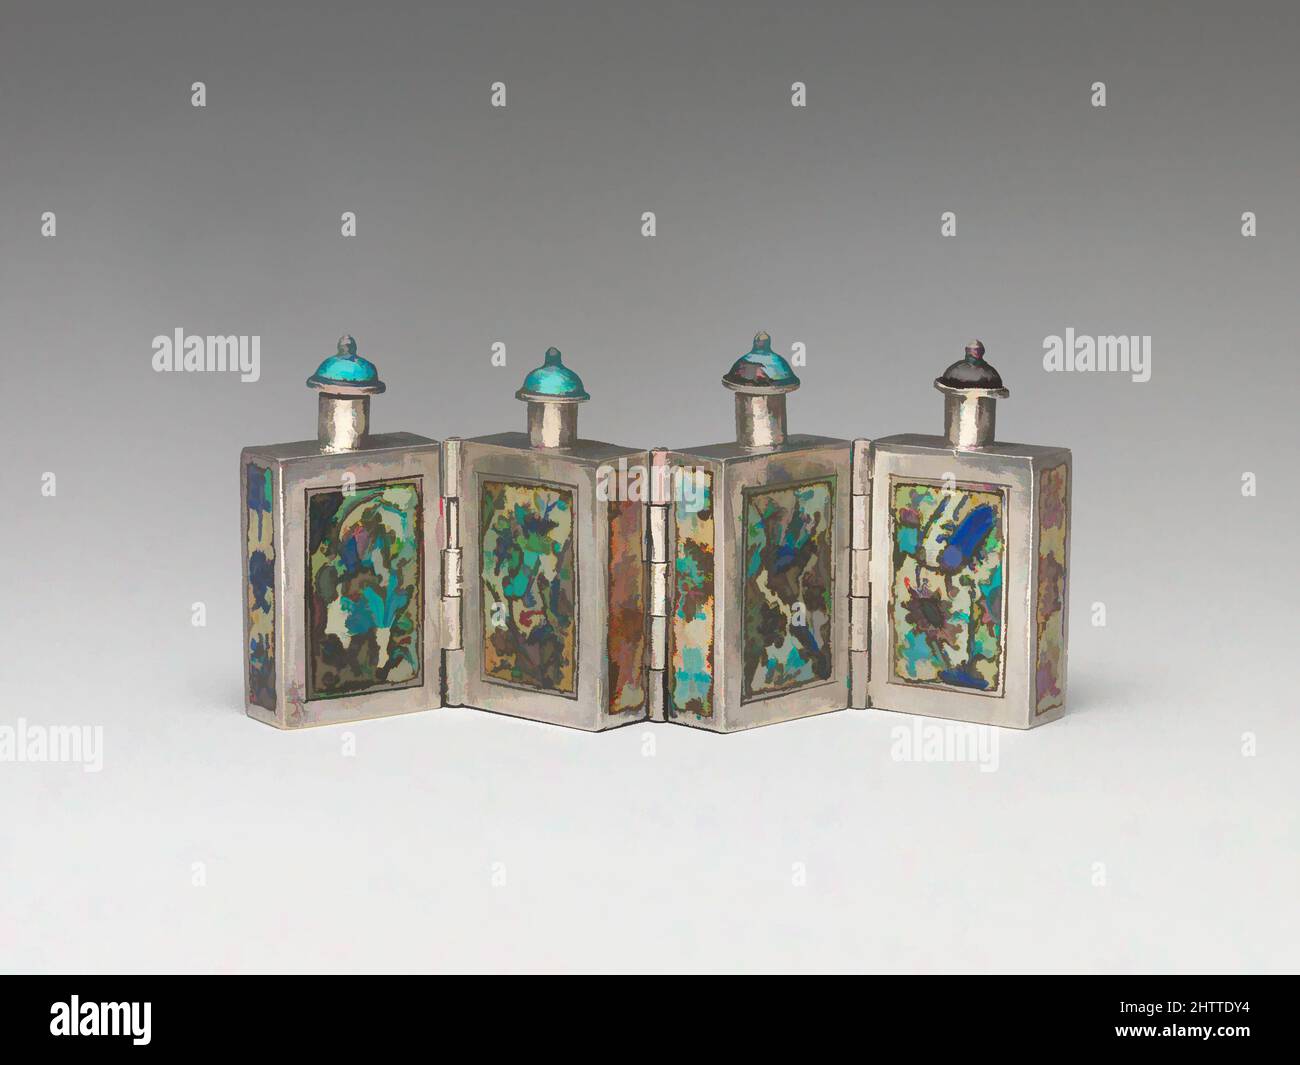 Art inspiré des bouteilles de tabac à charnière, Qing Dynasty (1644–1911), 19th Century, Chine, argent avec panneaux en émail peint et bouchons en émail, H. 1 11/16 po. (4,3 cm) ; L. 3 1/2 po. (8,9 cm), bouteilles de tabac à priser, oeuvres classiques modernisées par Artotop avec une touche de modernité. Formes, couleur et valeur, impact visuel accrocheur sur l'art émotions par la liberté d'œuvres d'art d'une manière contemporaine. Un message intemporel qui cherche une nouvelle direction créative. Artistes qui se tournent vers le support numérique et créent le NFT Artotop Banque D'Images